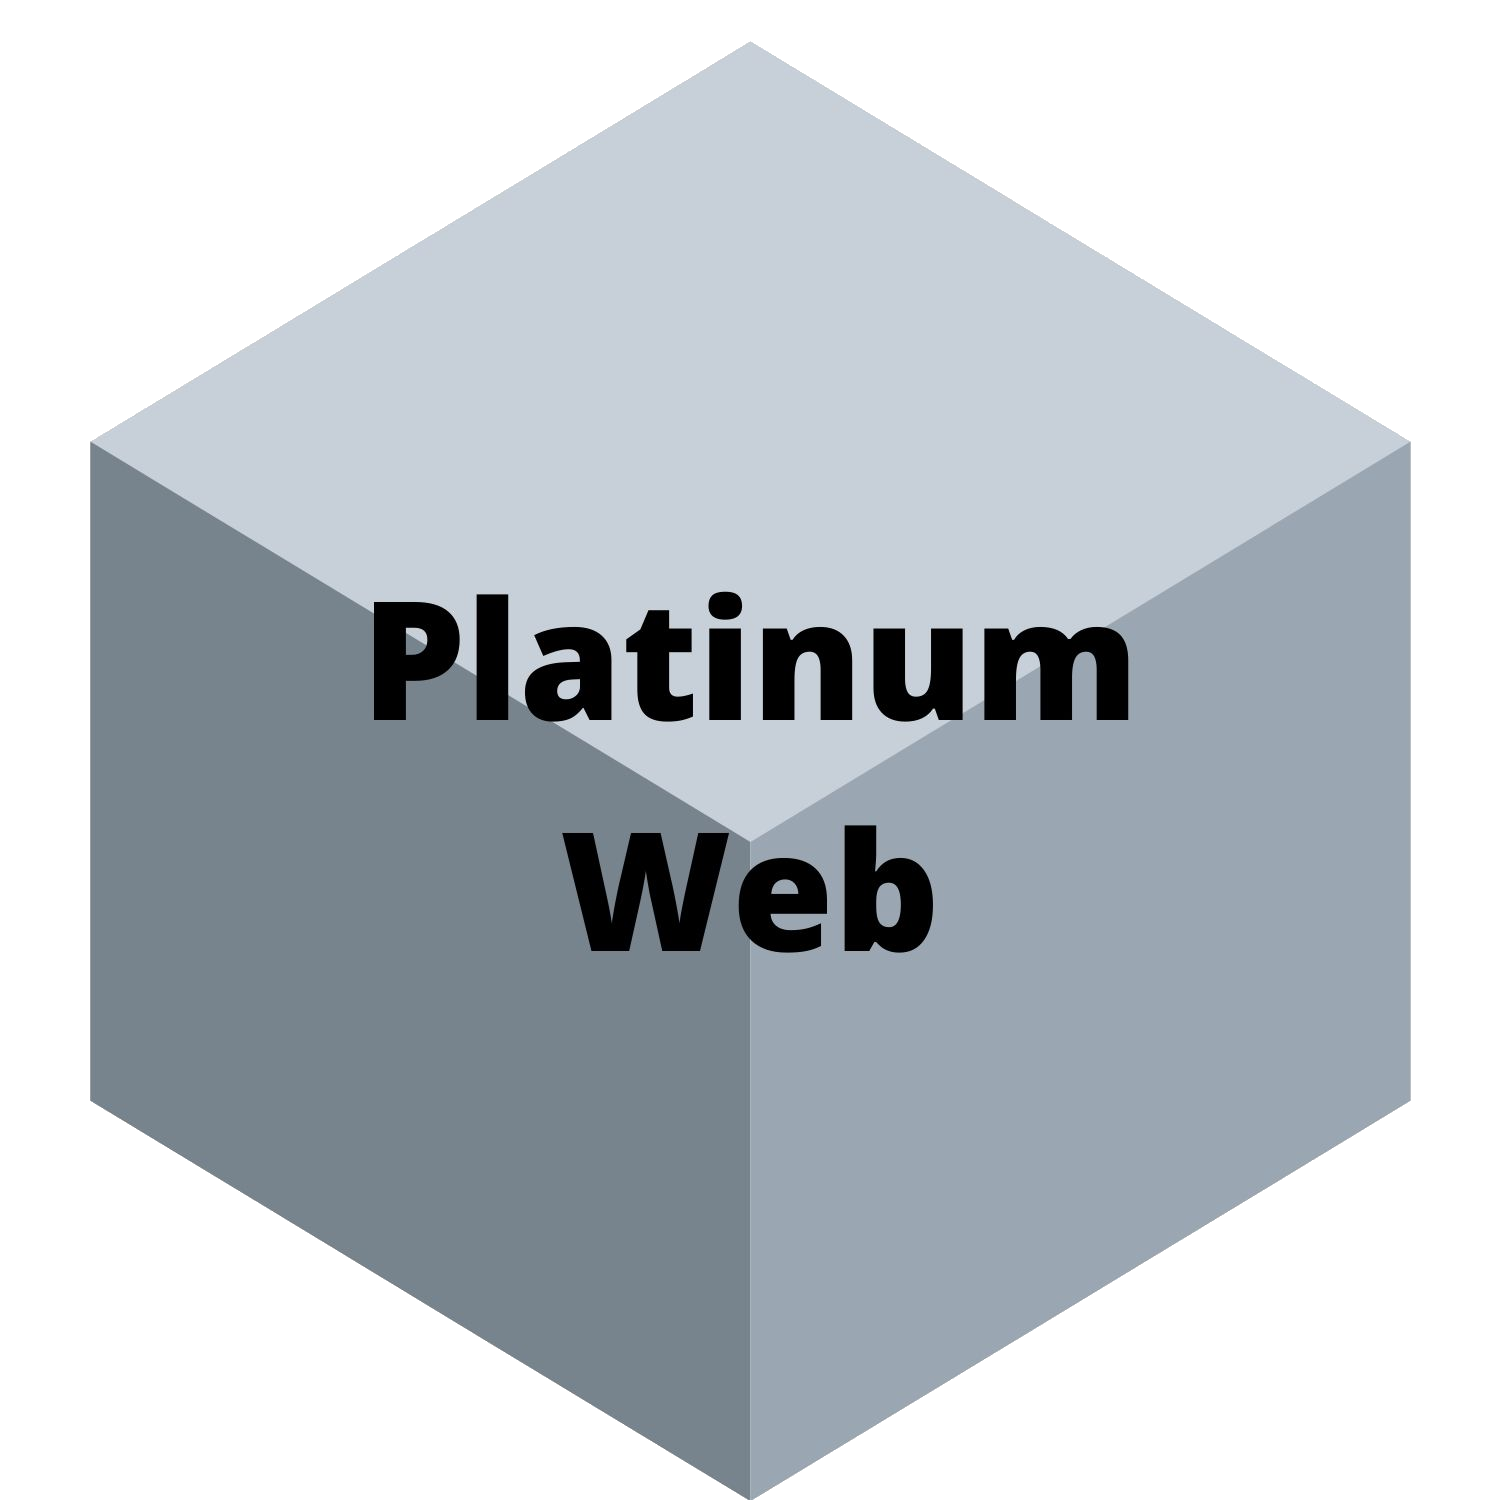 Platinum Web